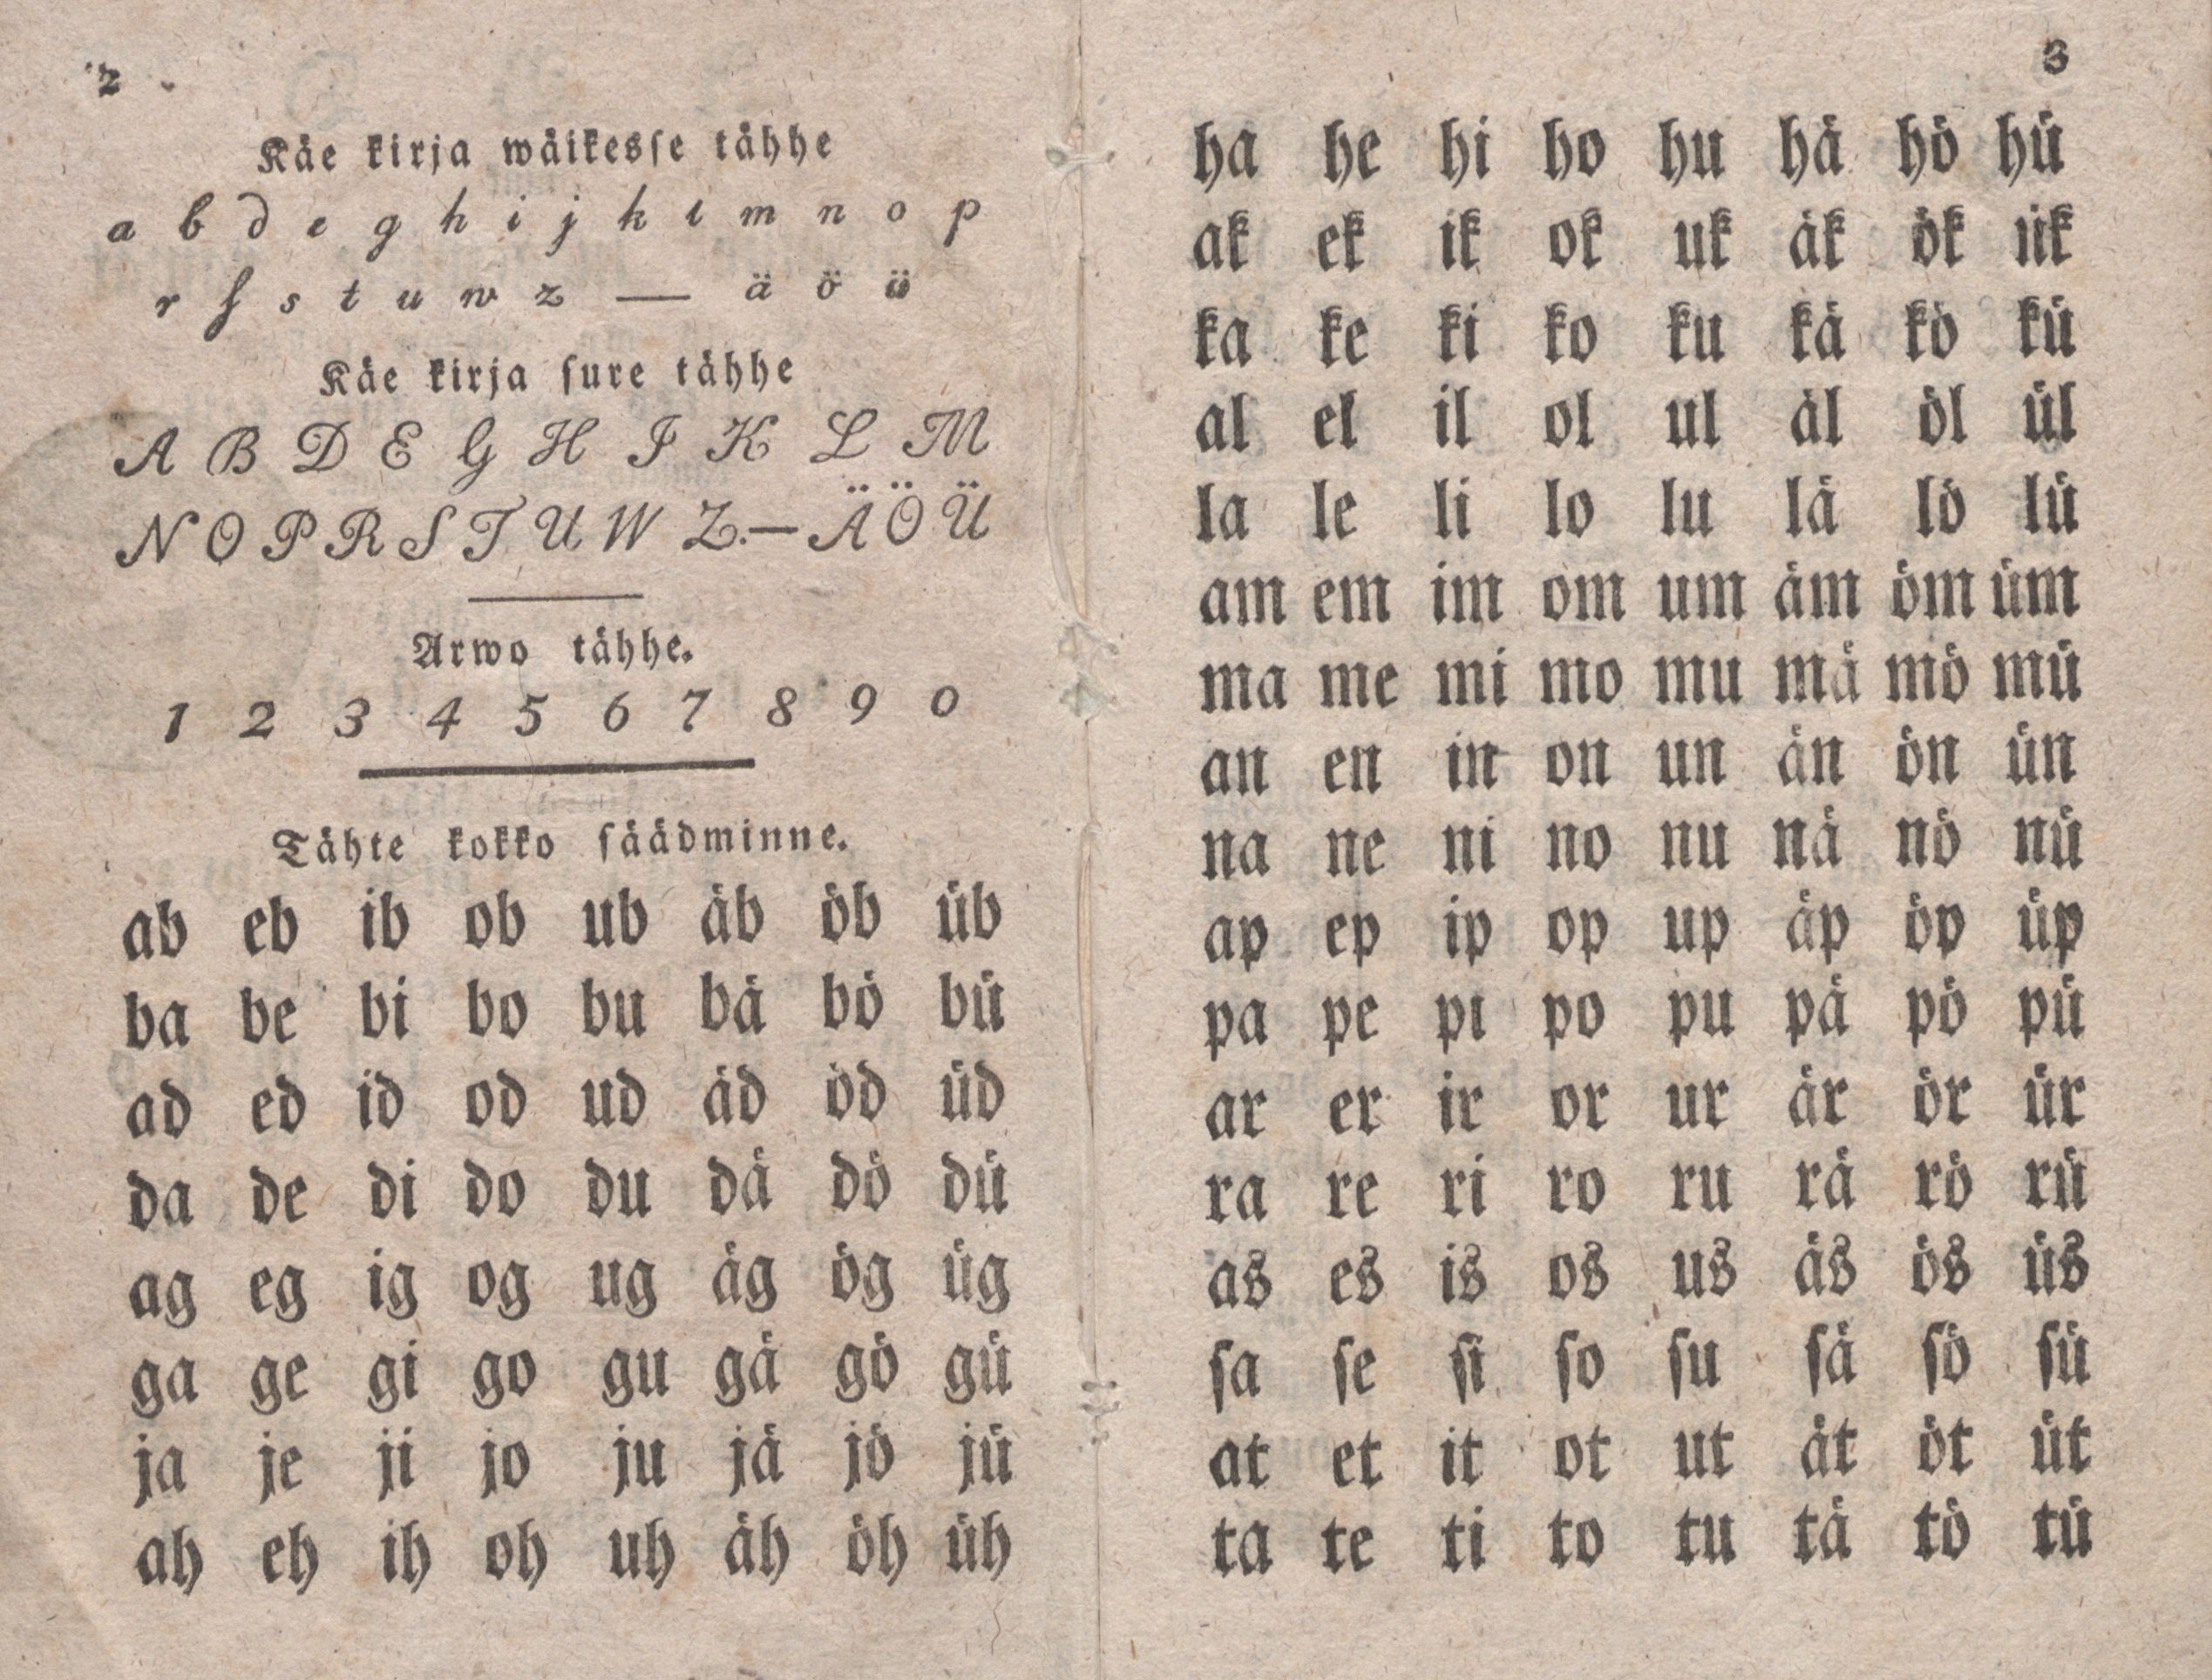 ABD nink wäikenne luggemisse ramat (1815) | 3. (2-3) Основной текст